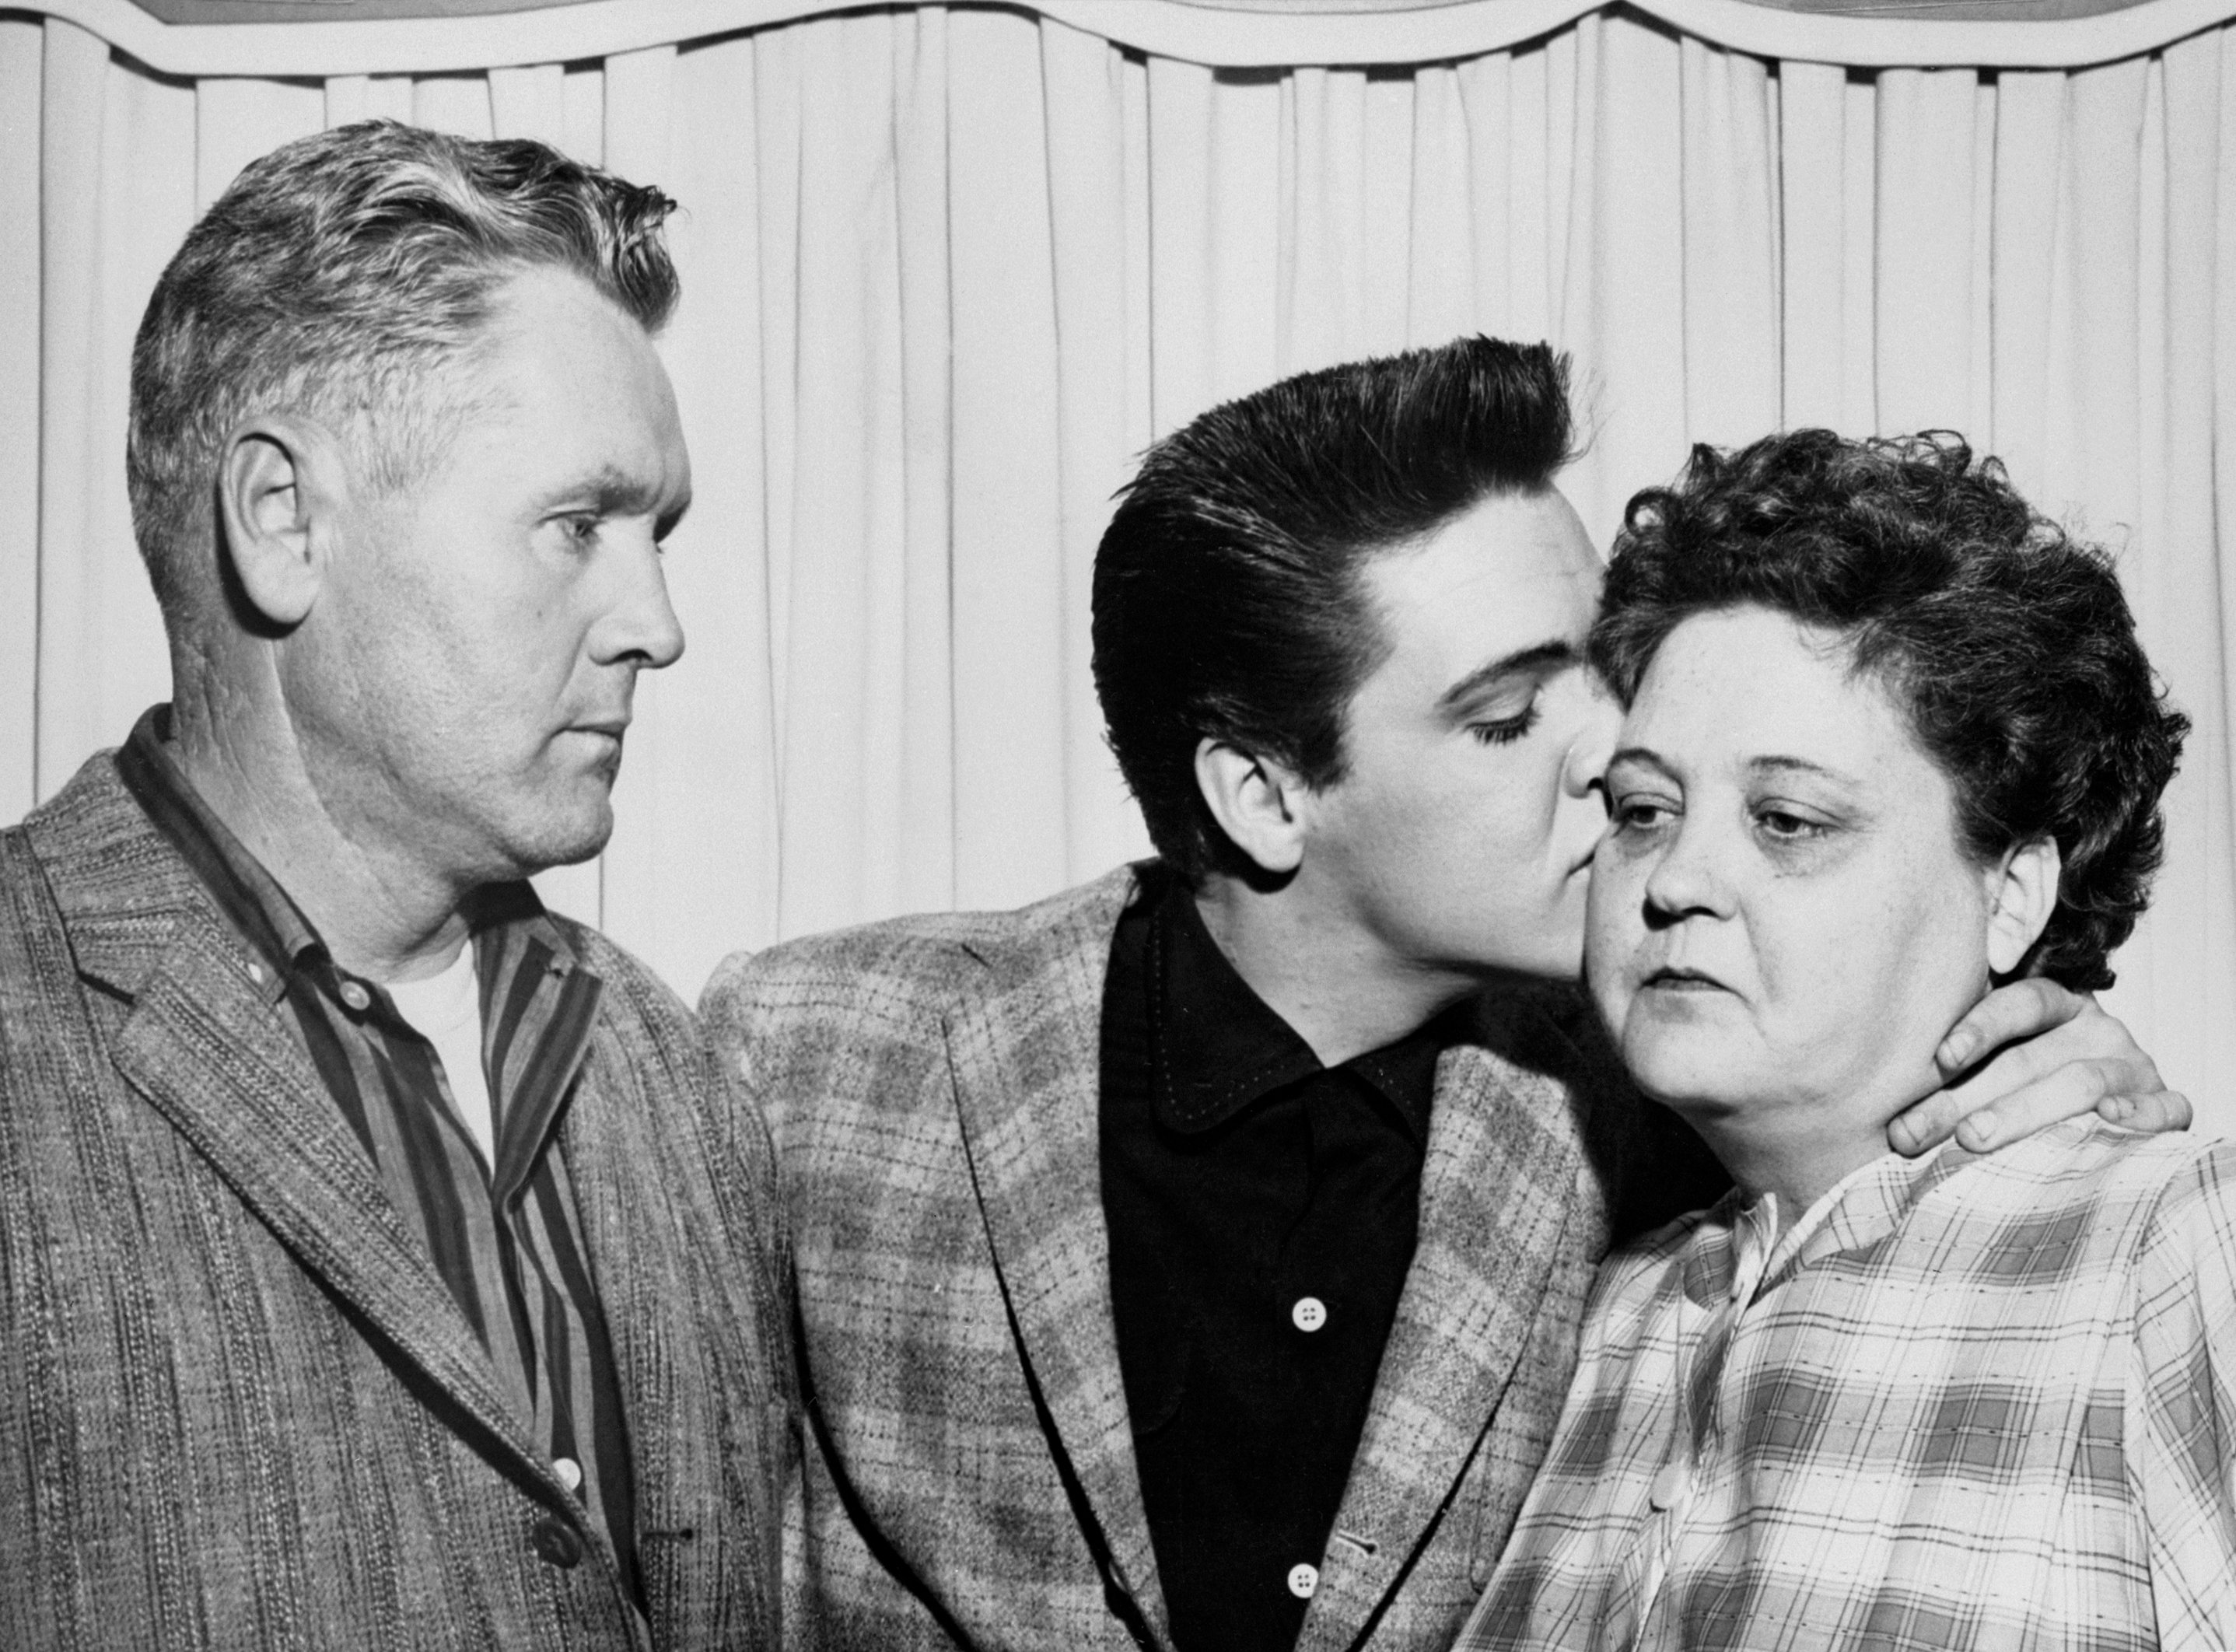 Vernon Presley, Elvis Presley, and Gladys Presley near a curtain